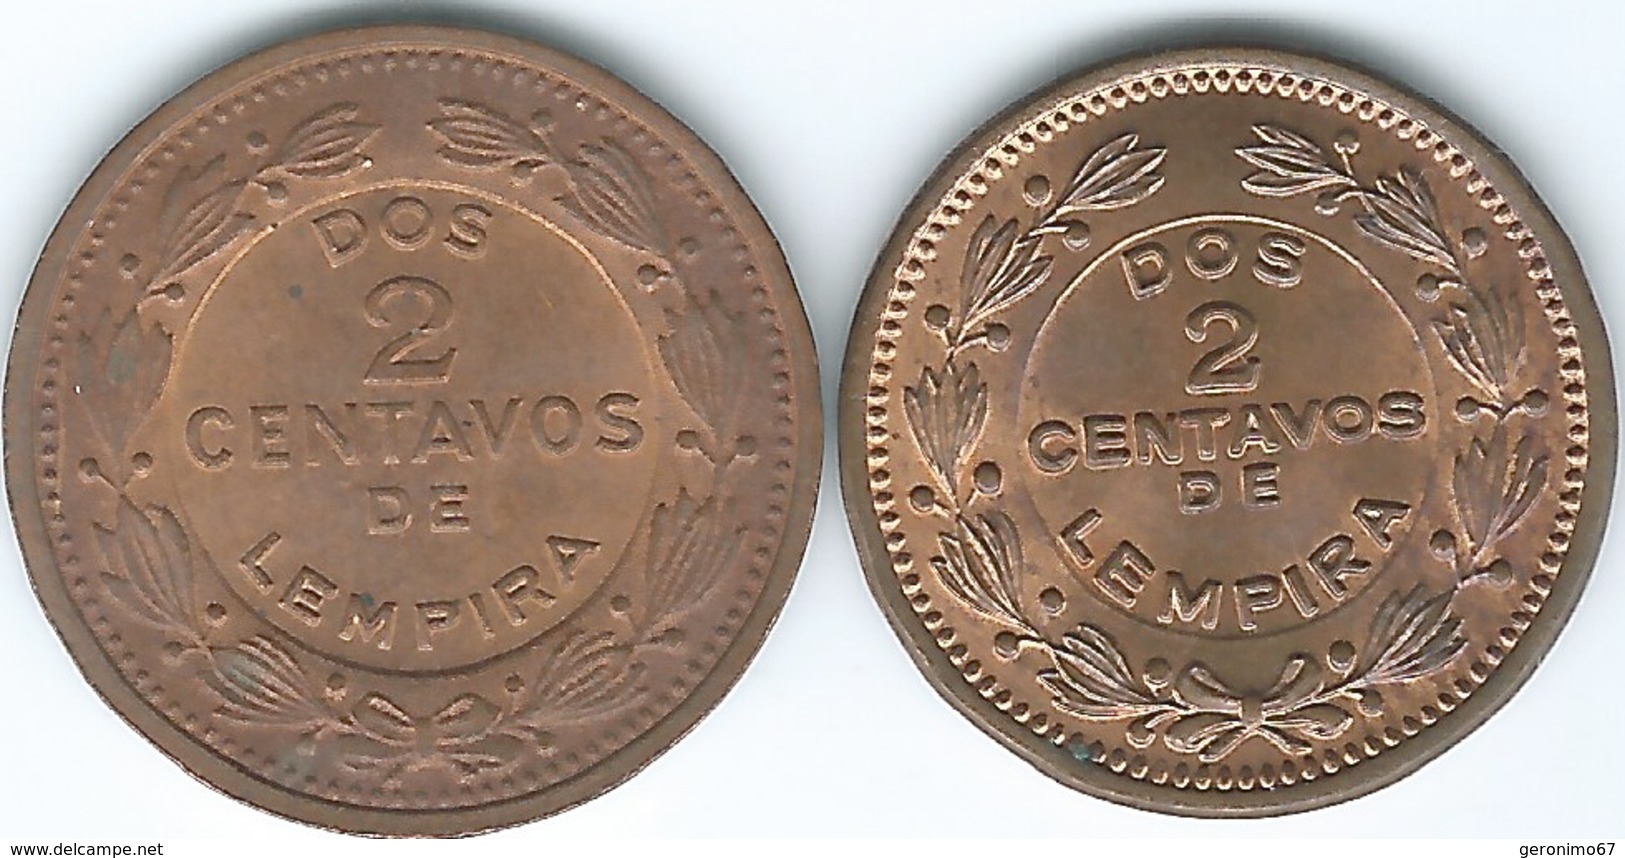 Honduras - 2 Centavos - 1956 (KM78) & 1974 (KM78a) - Honduras